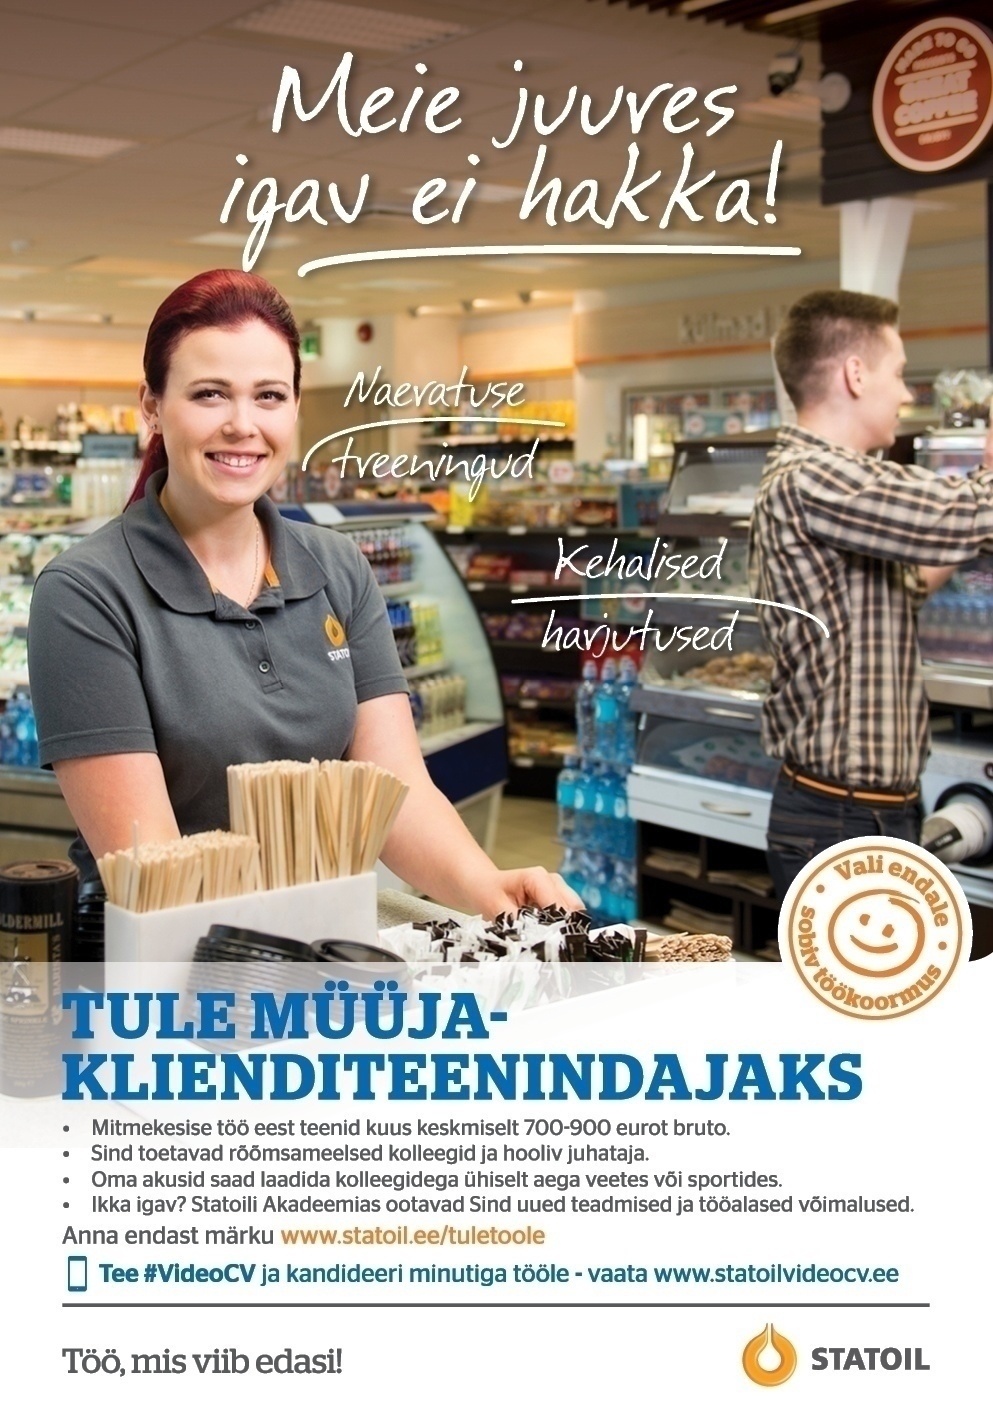 Circle K Eesti AS Müüja-klienditeenindaja Viljandi (Endla ja Männimäe) teenindusjaamadesse